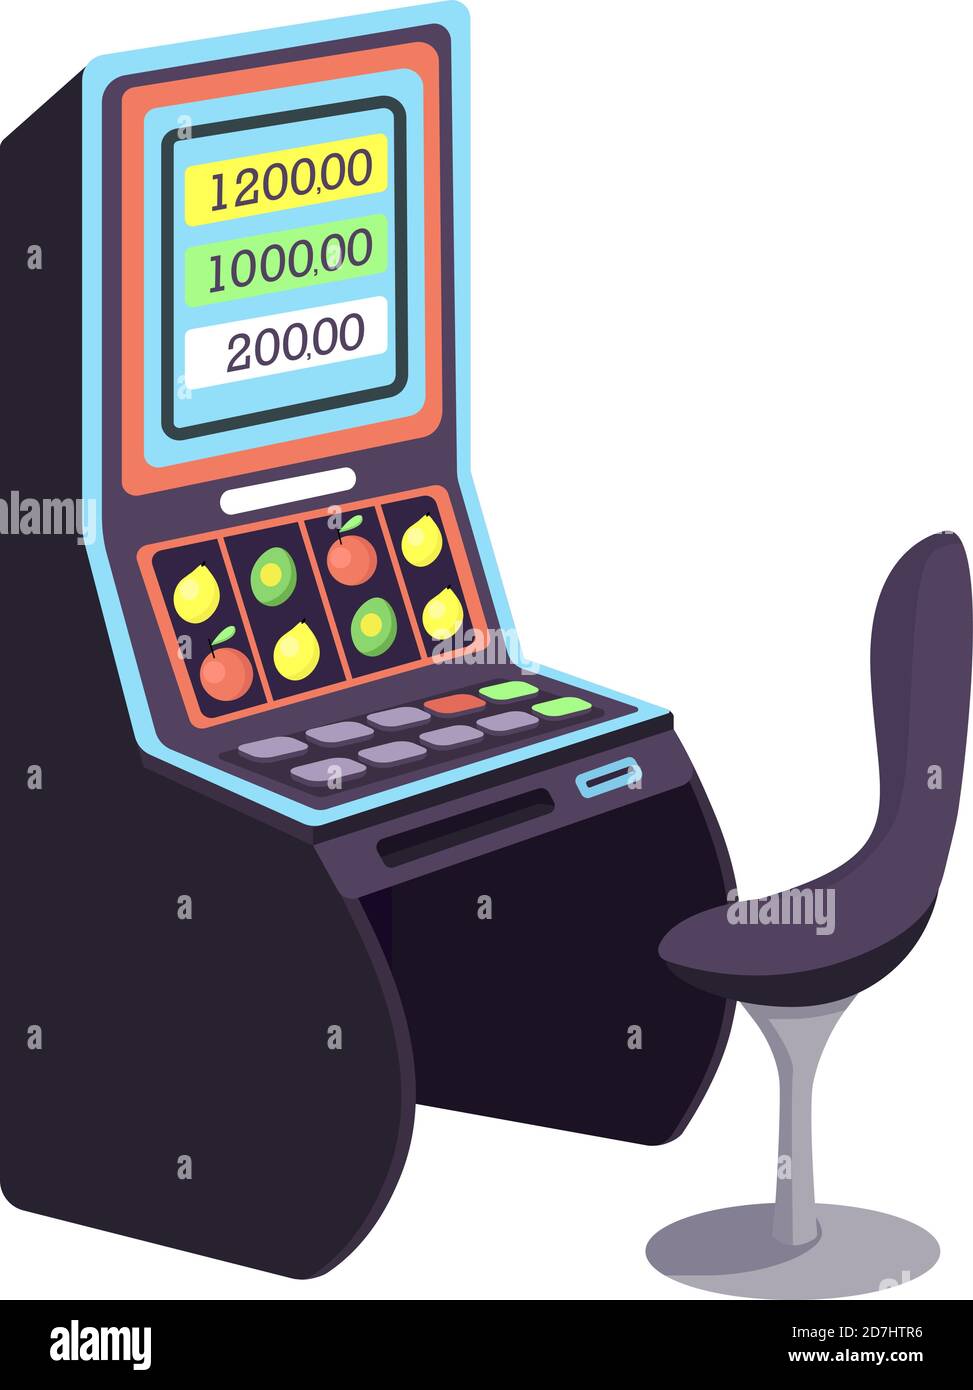 Casino cartoon vector illustration Stock Vector